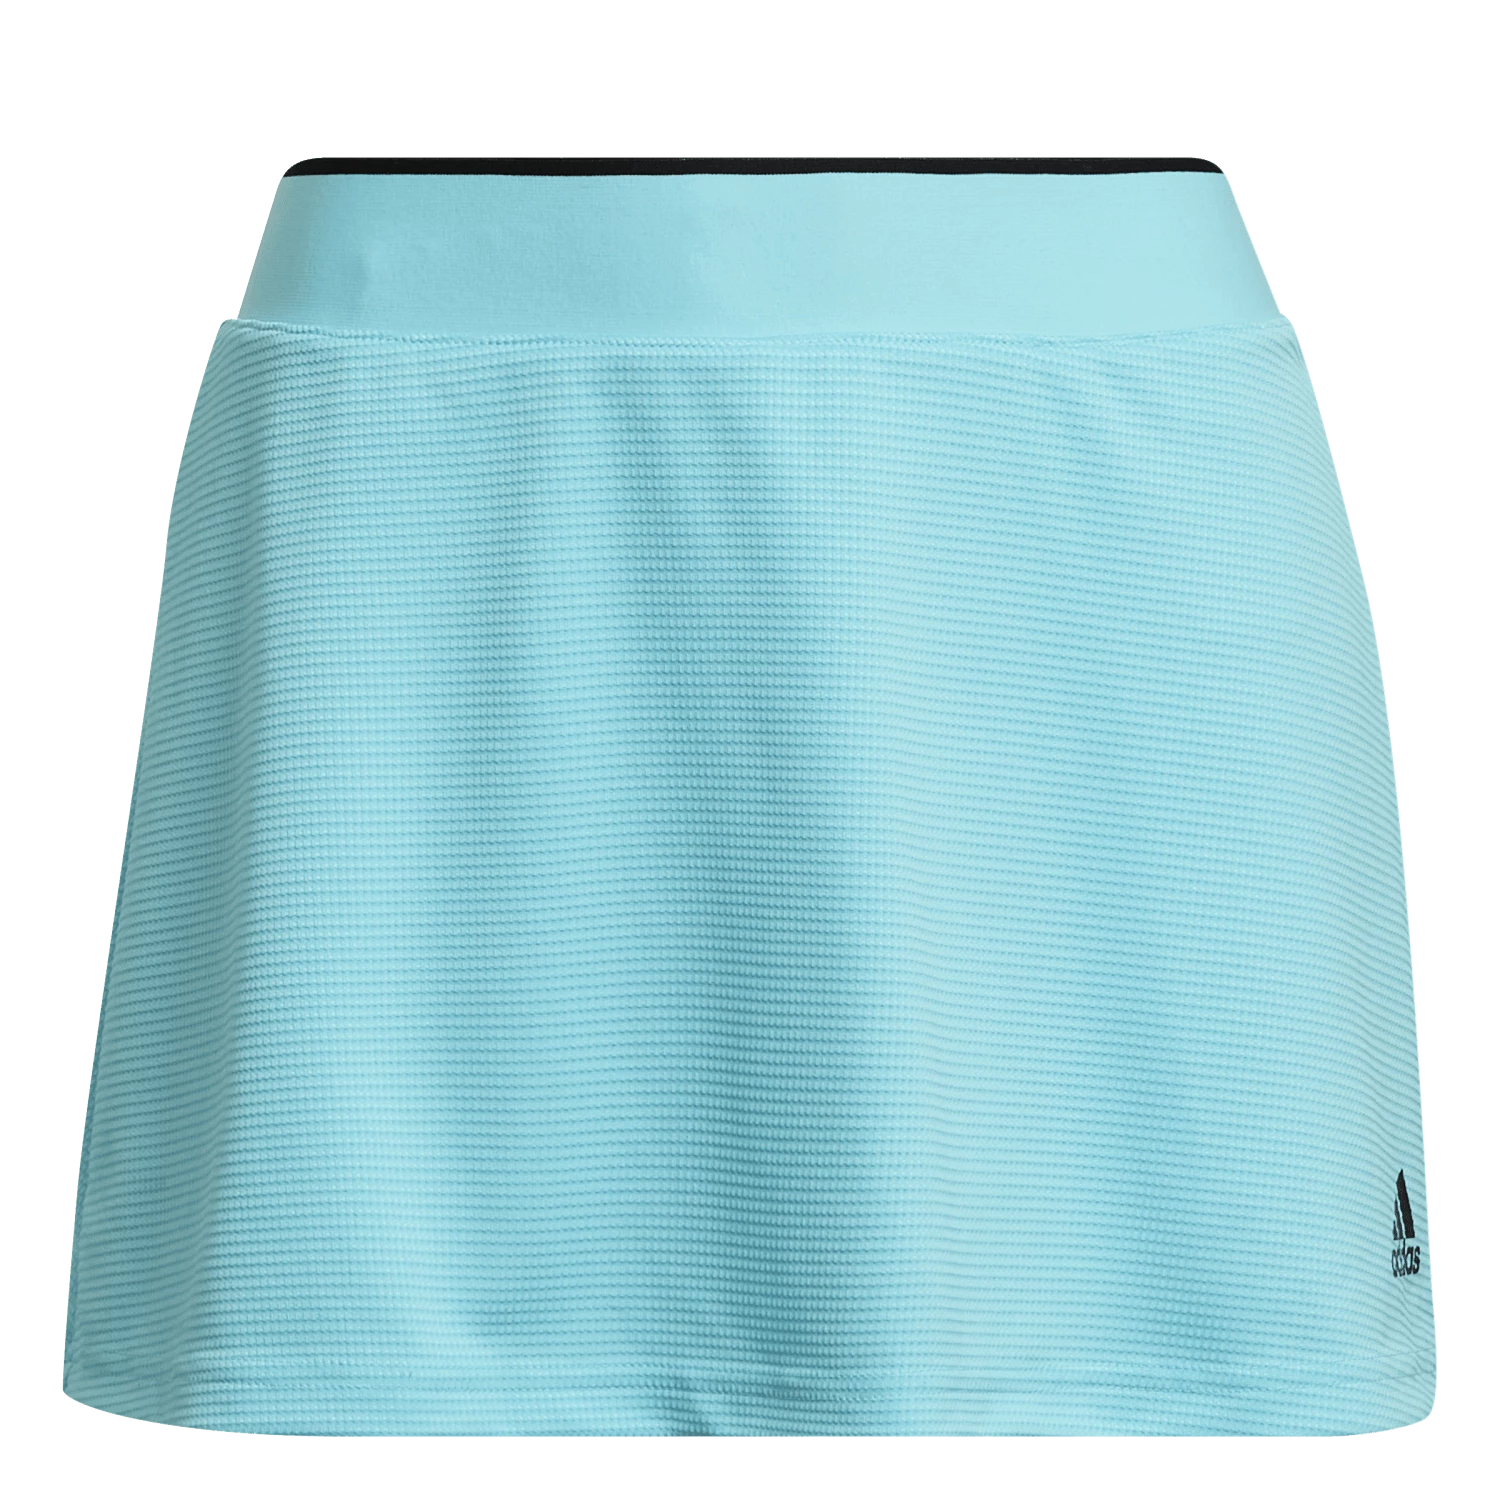 Dámská sukně adidas  Club Skirt Blue M